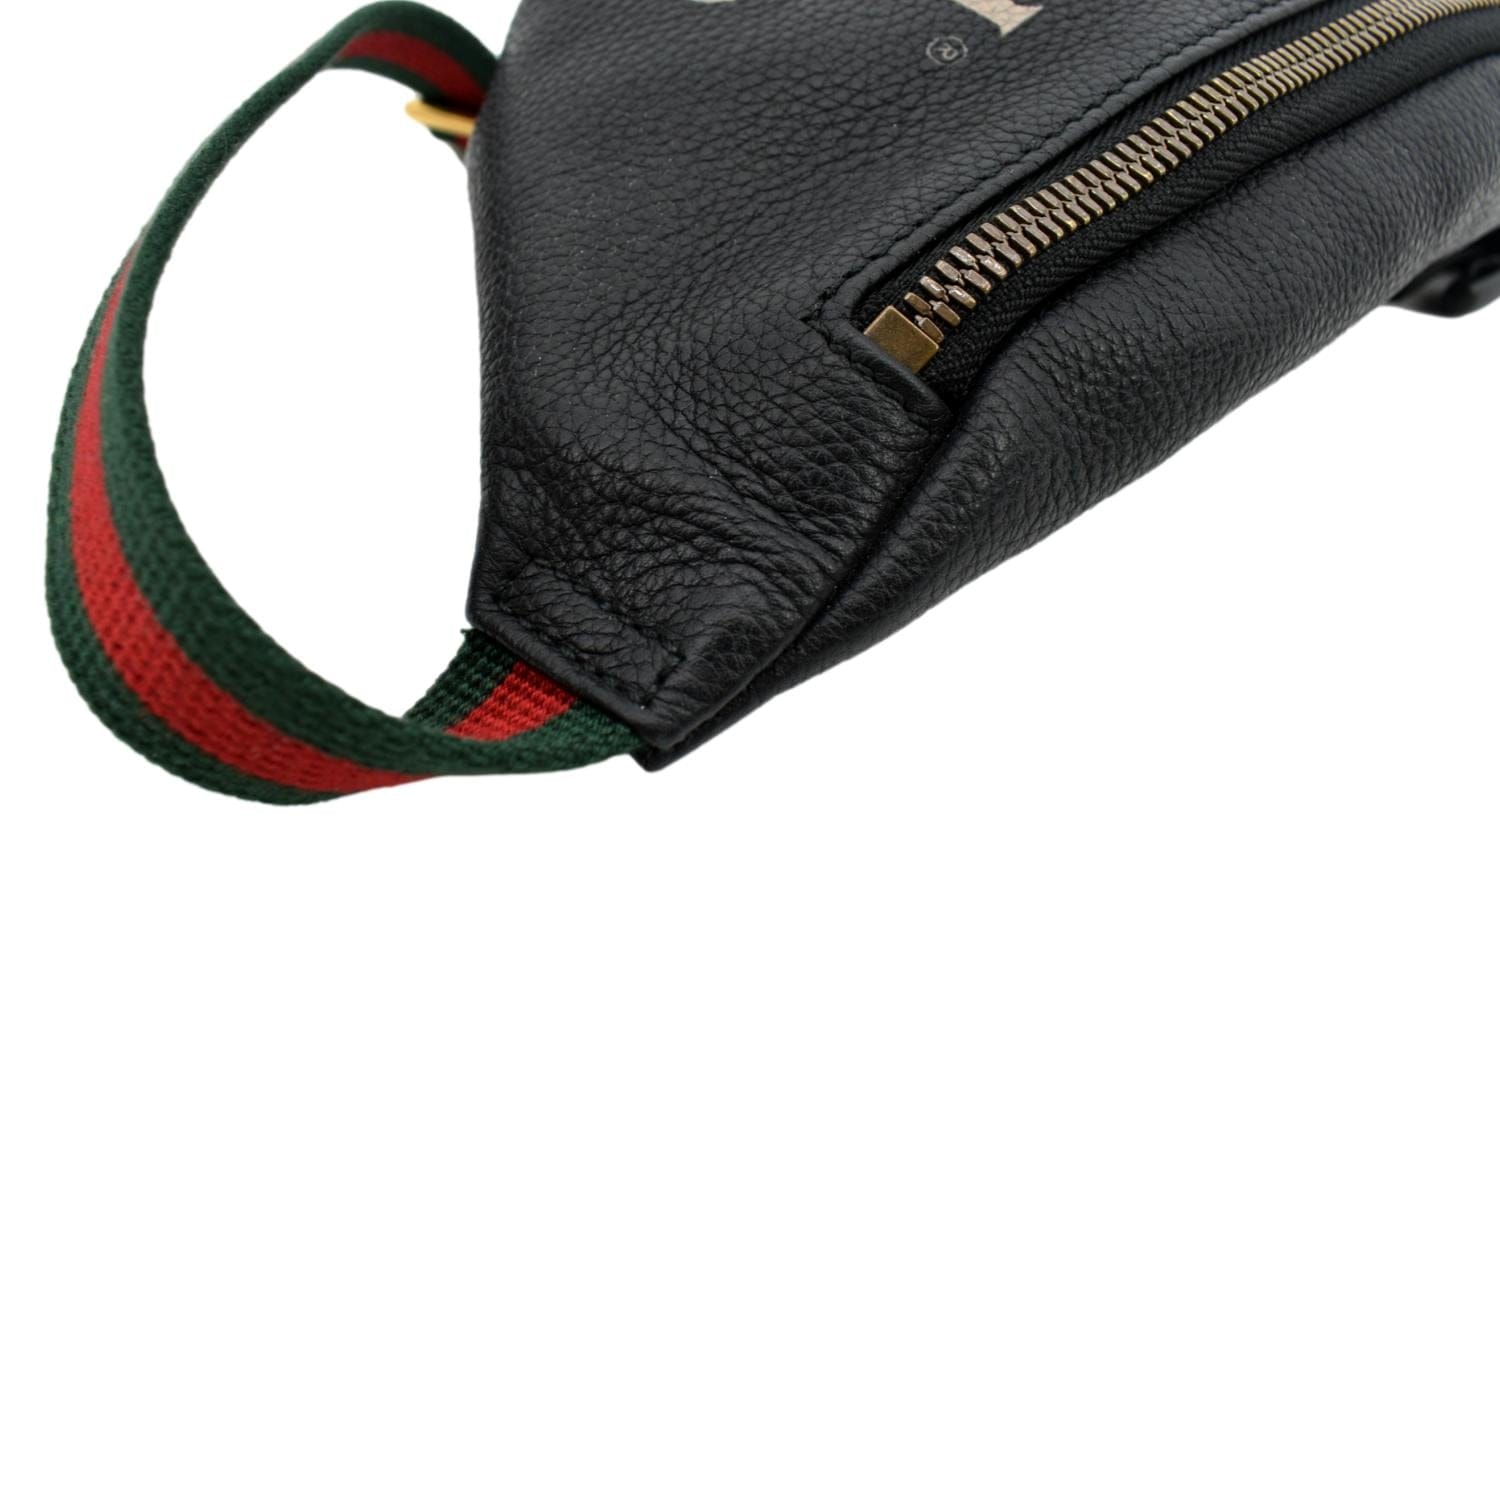 GUCCI Black Grained Calfskin Logo Belt Bum Bag Large - A World Of